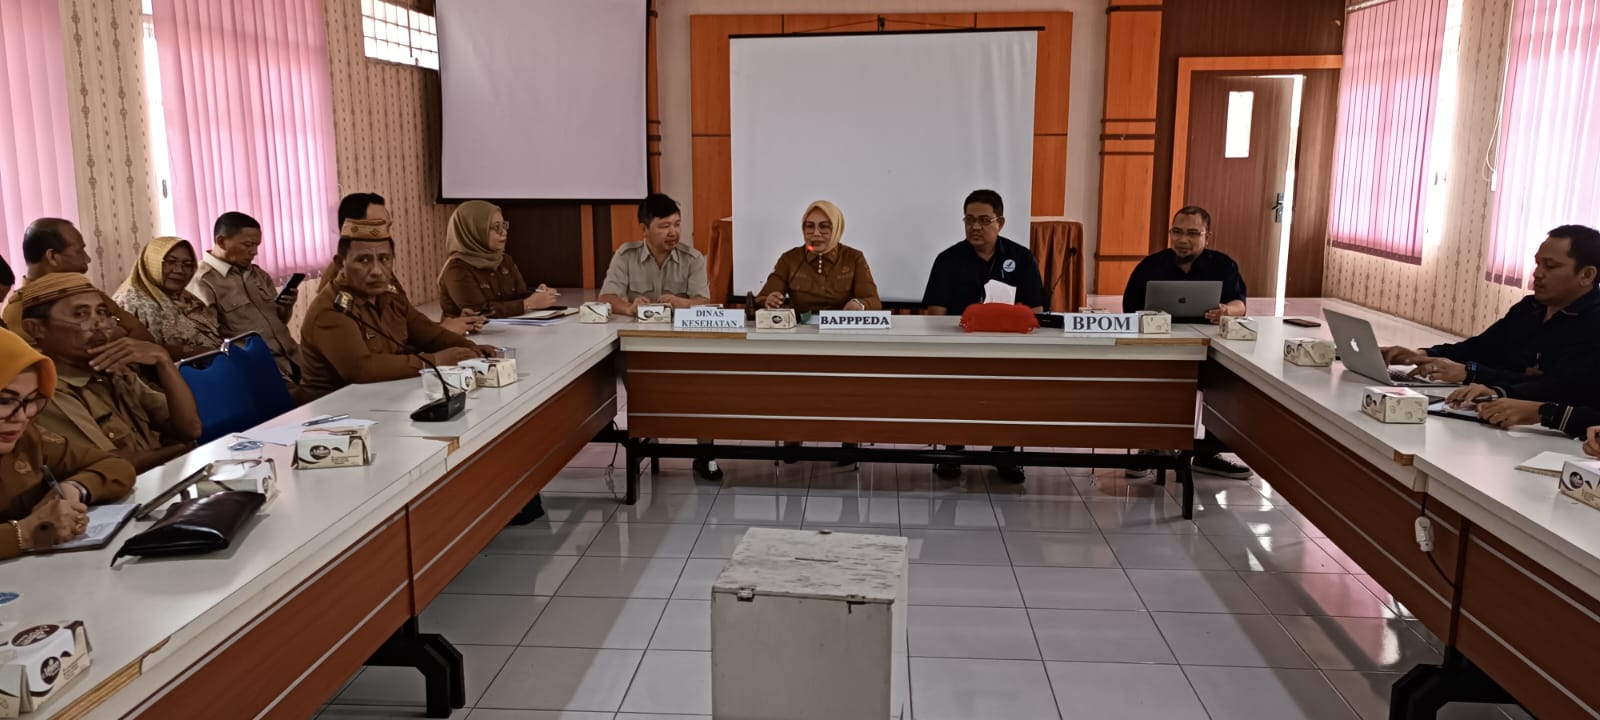 Kondisi Rapat rapat koordinasi antara organisasi perangkat daerah (Foto: Humas Pemkot Gorontalo)